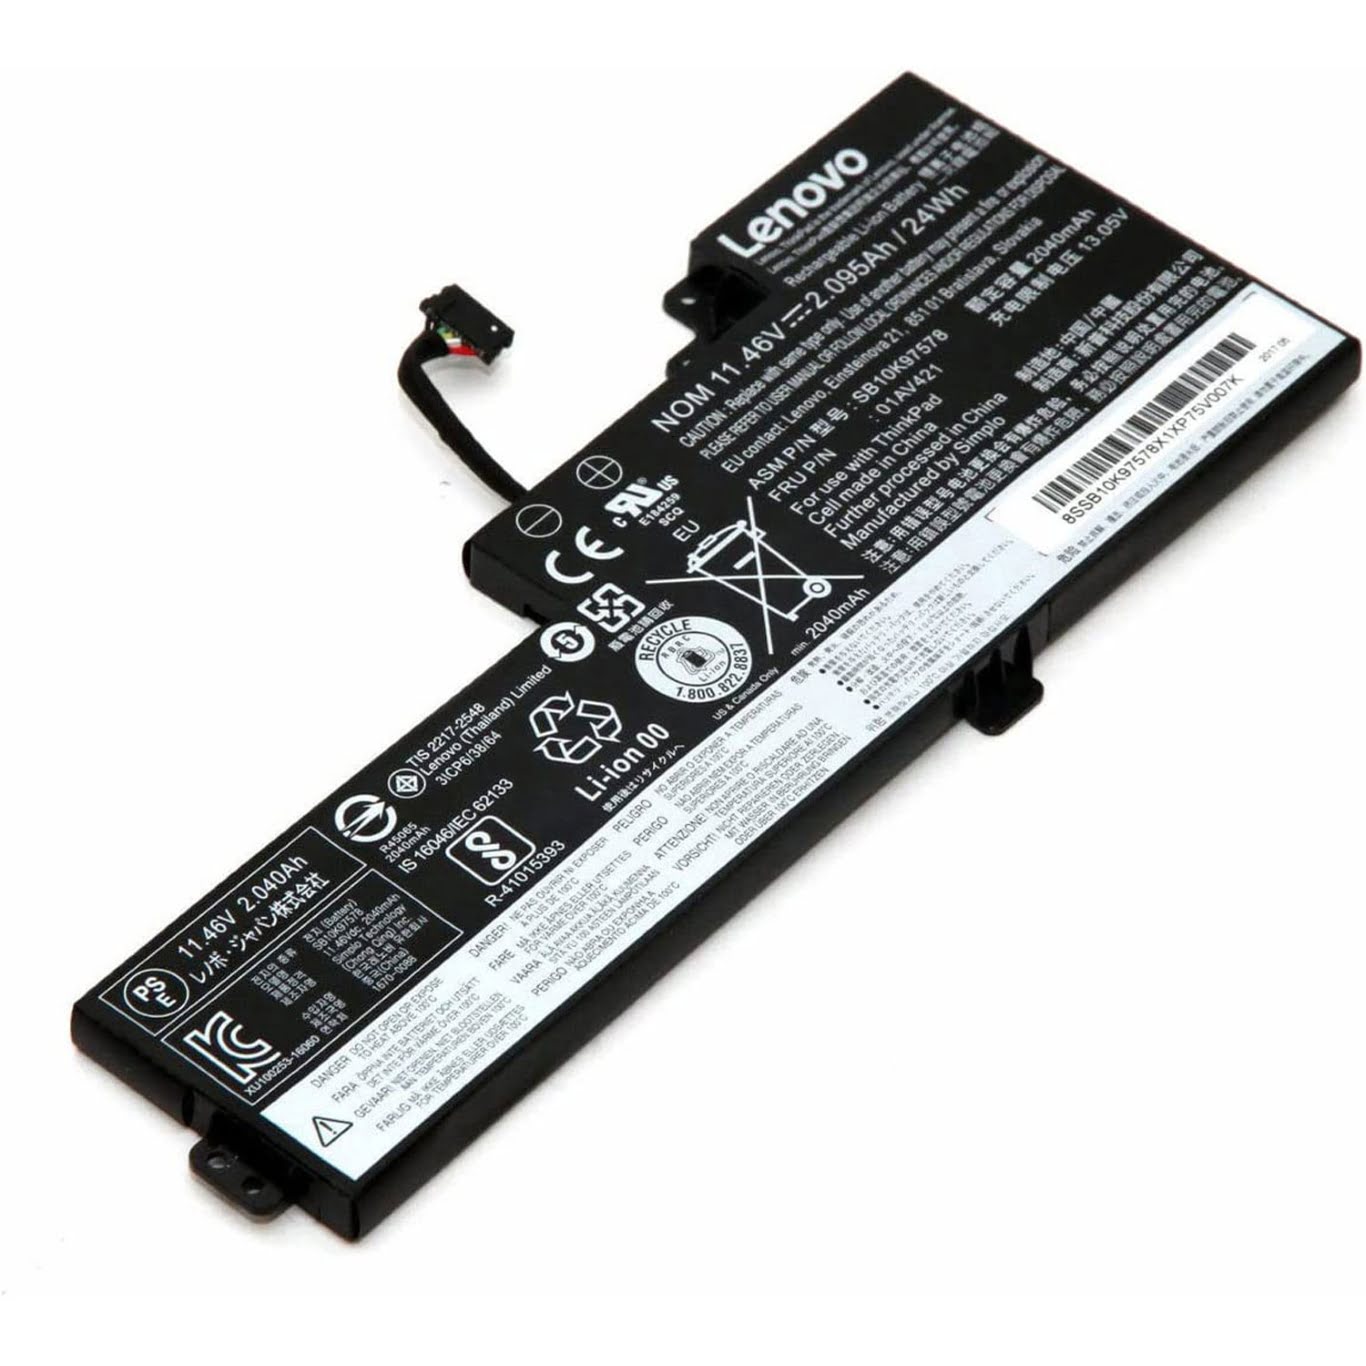 01AV419, 01AV420 ersatz Laptop Akku fuer Lenovo ThinkPad T470 T480 Series, 11,4v/11,46v, 24wh